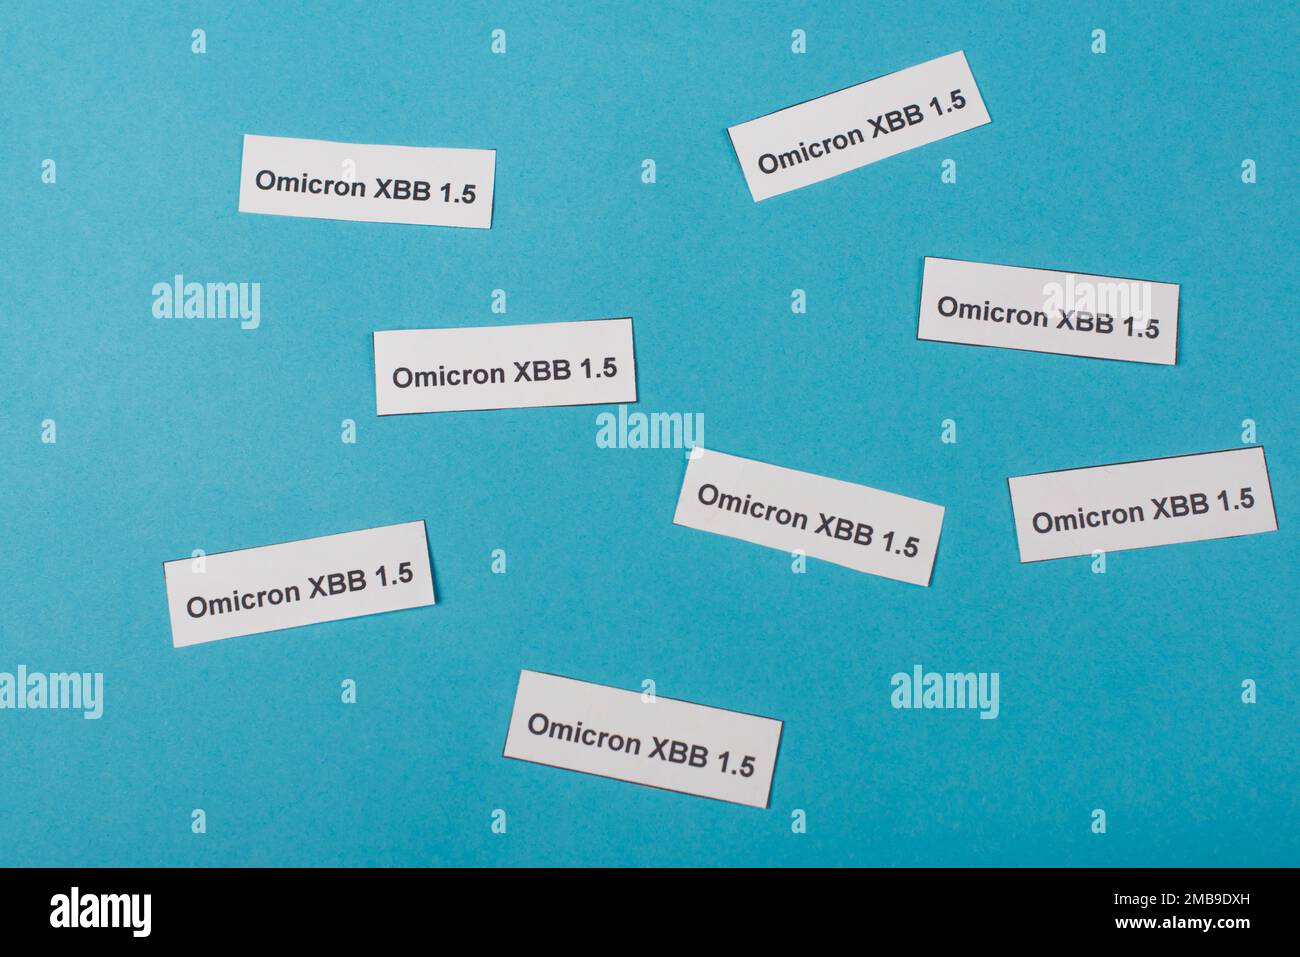 Vista dall'alto della carta con scritte omicron xbb su sfondo blu, immagine stock Foto Stock